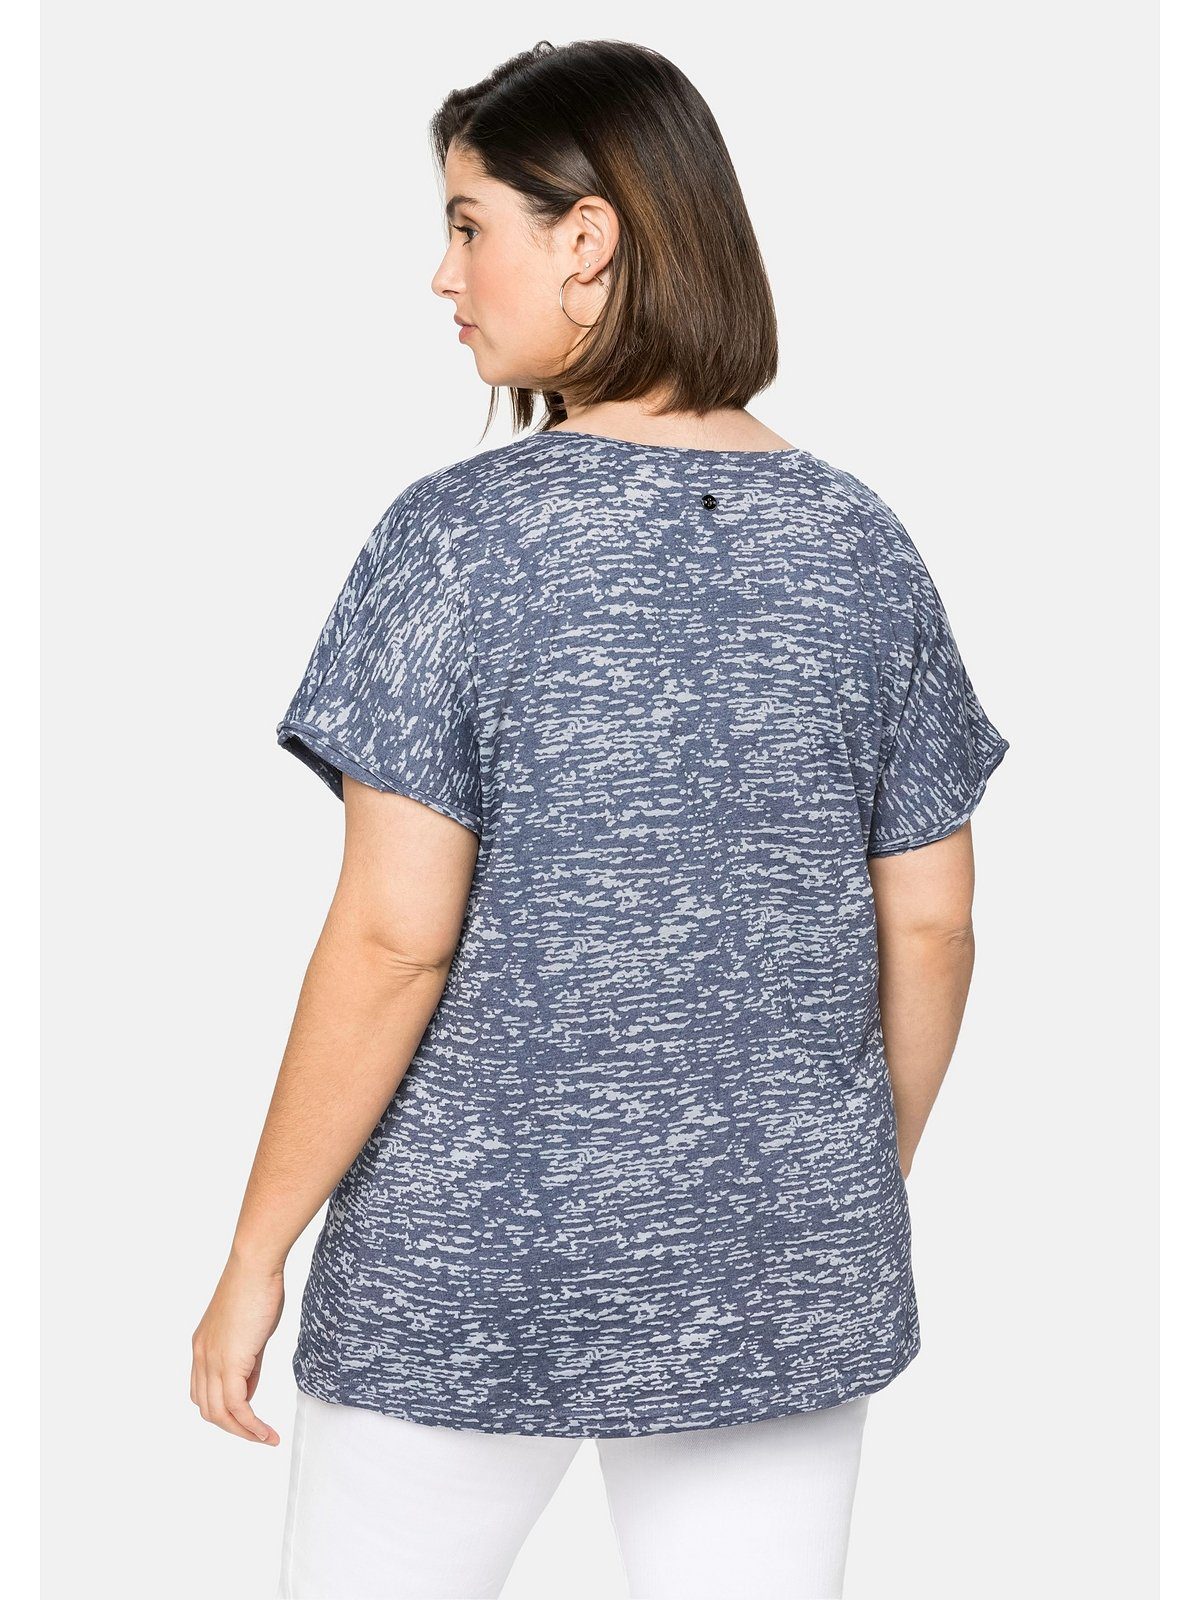 T-Shirt leicht mit Ausbrennermuster, Große transparent marine Sheego Größen